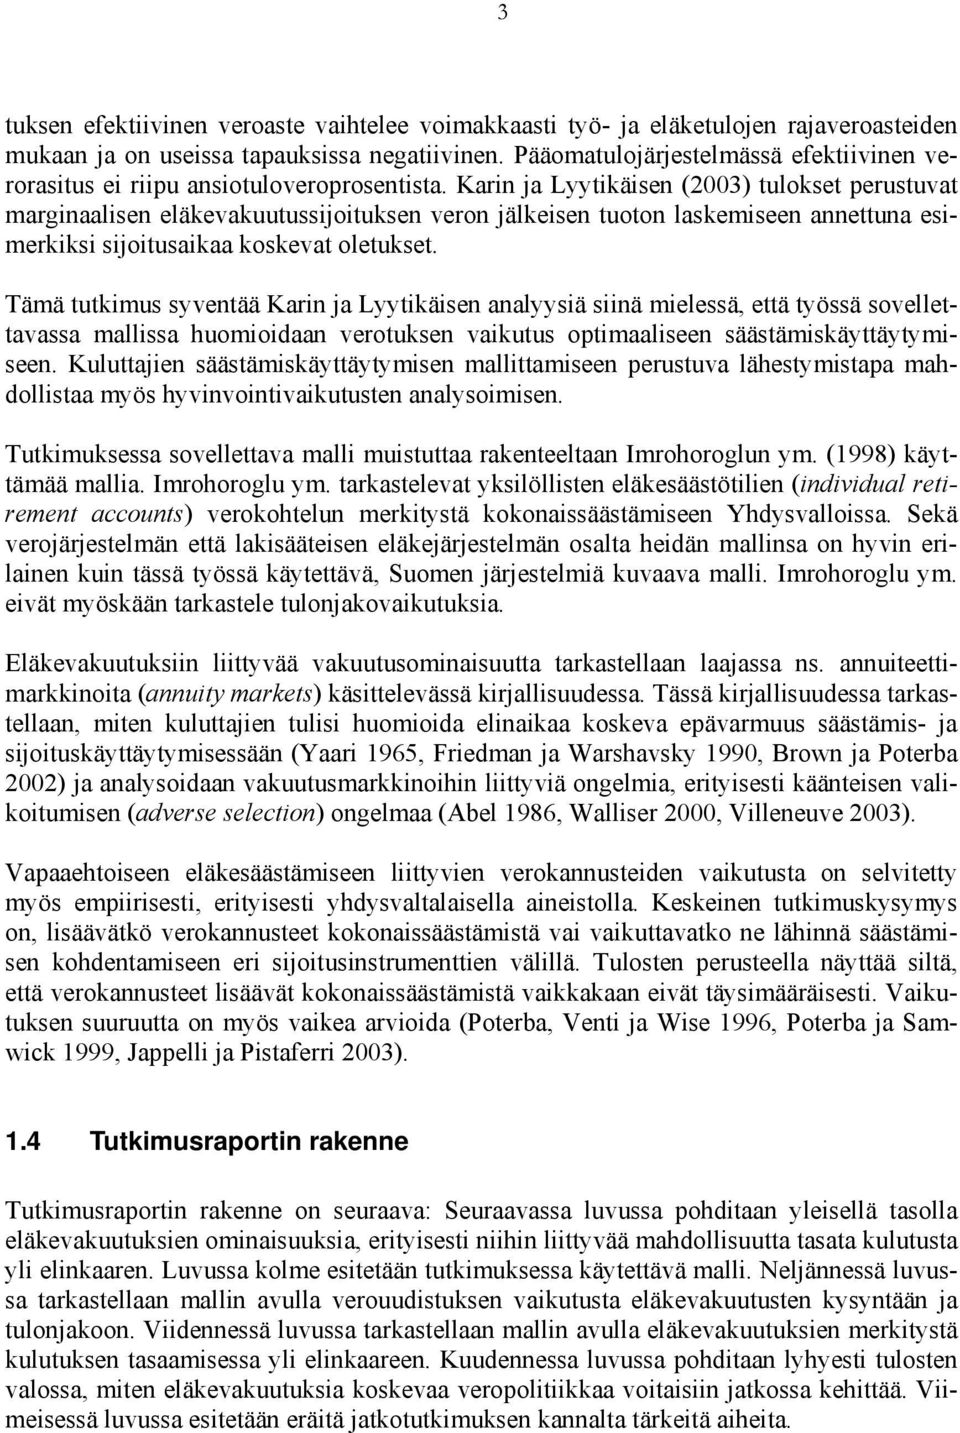 Karin ja Lyytikäisen (2003) tulokset perustuvat marginaalisen eläkevakuutussijoituksen veron jälkeisen tuoton laskemiseen annettuna esimerkiksi sijoitusaikaa koskevat oletukset.